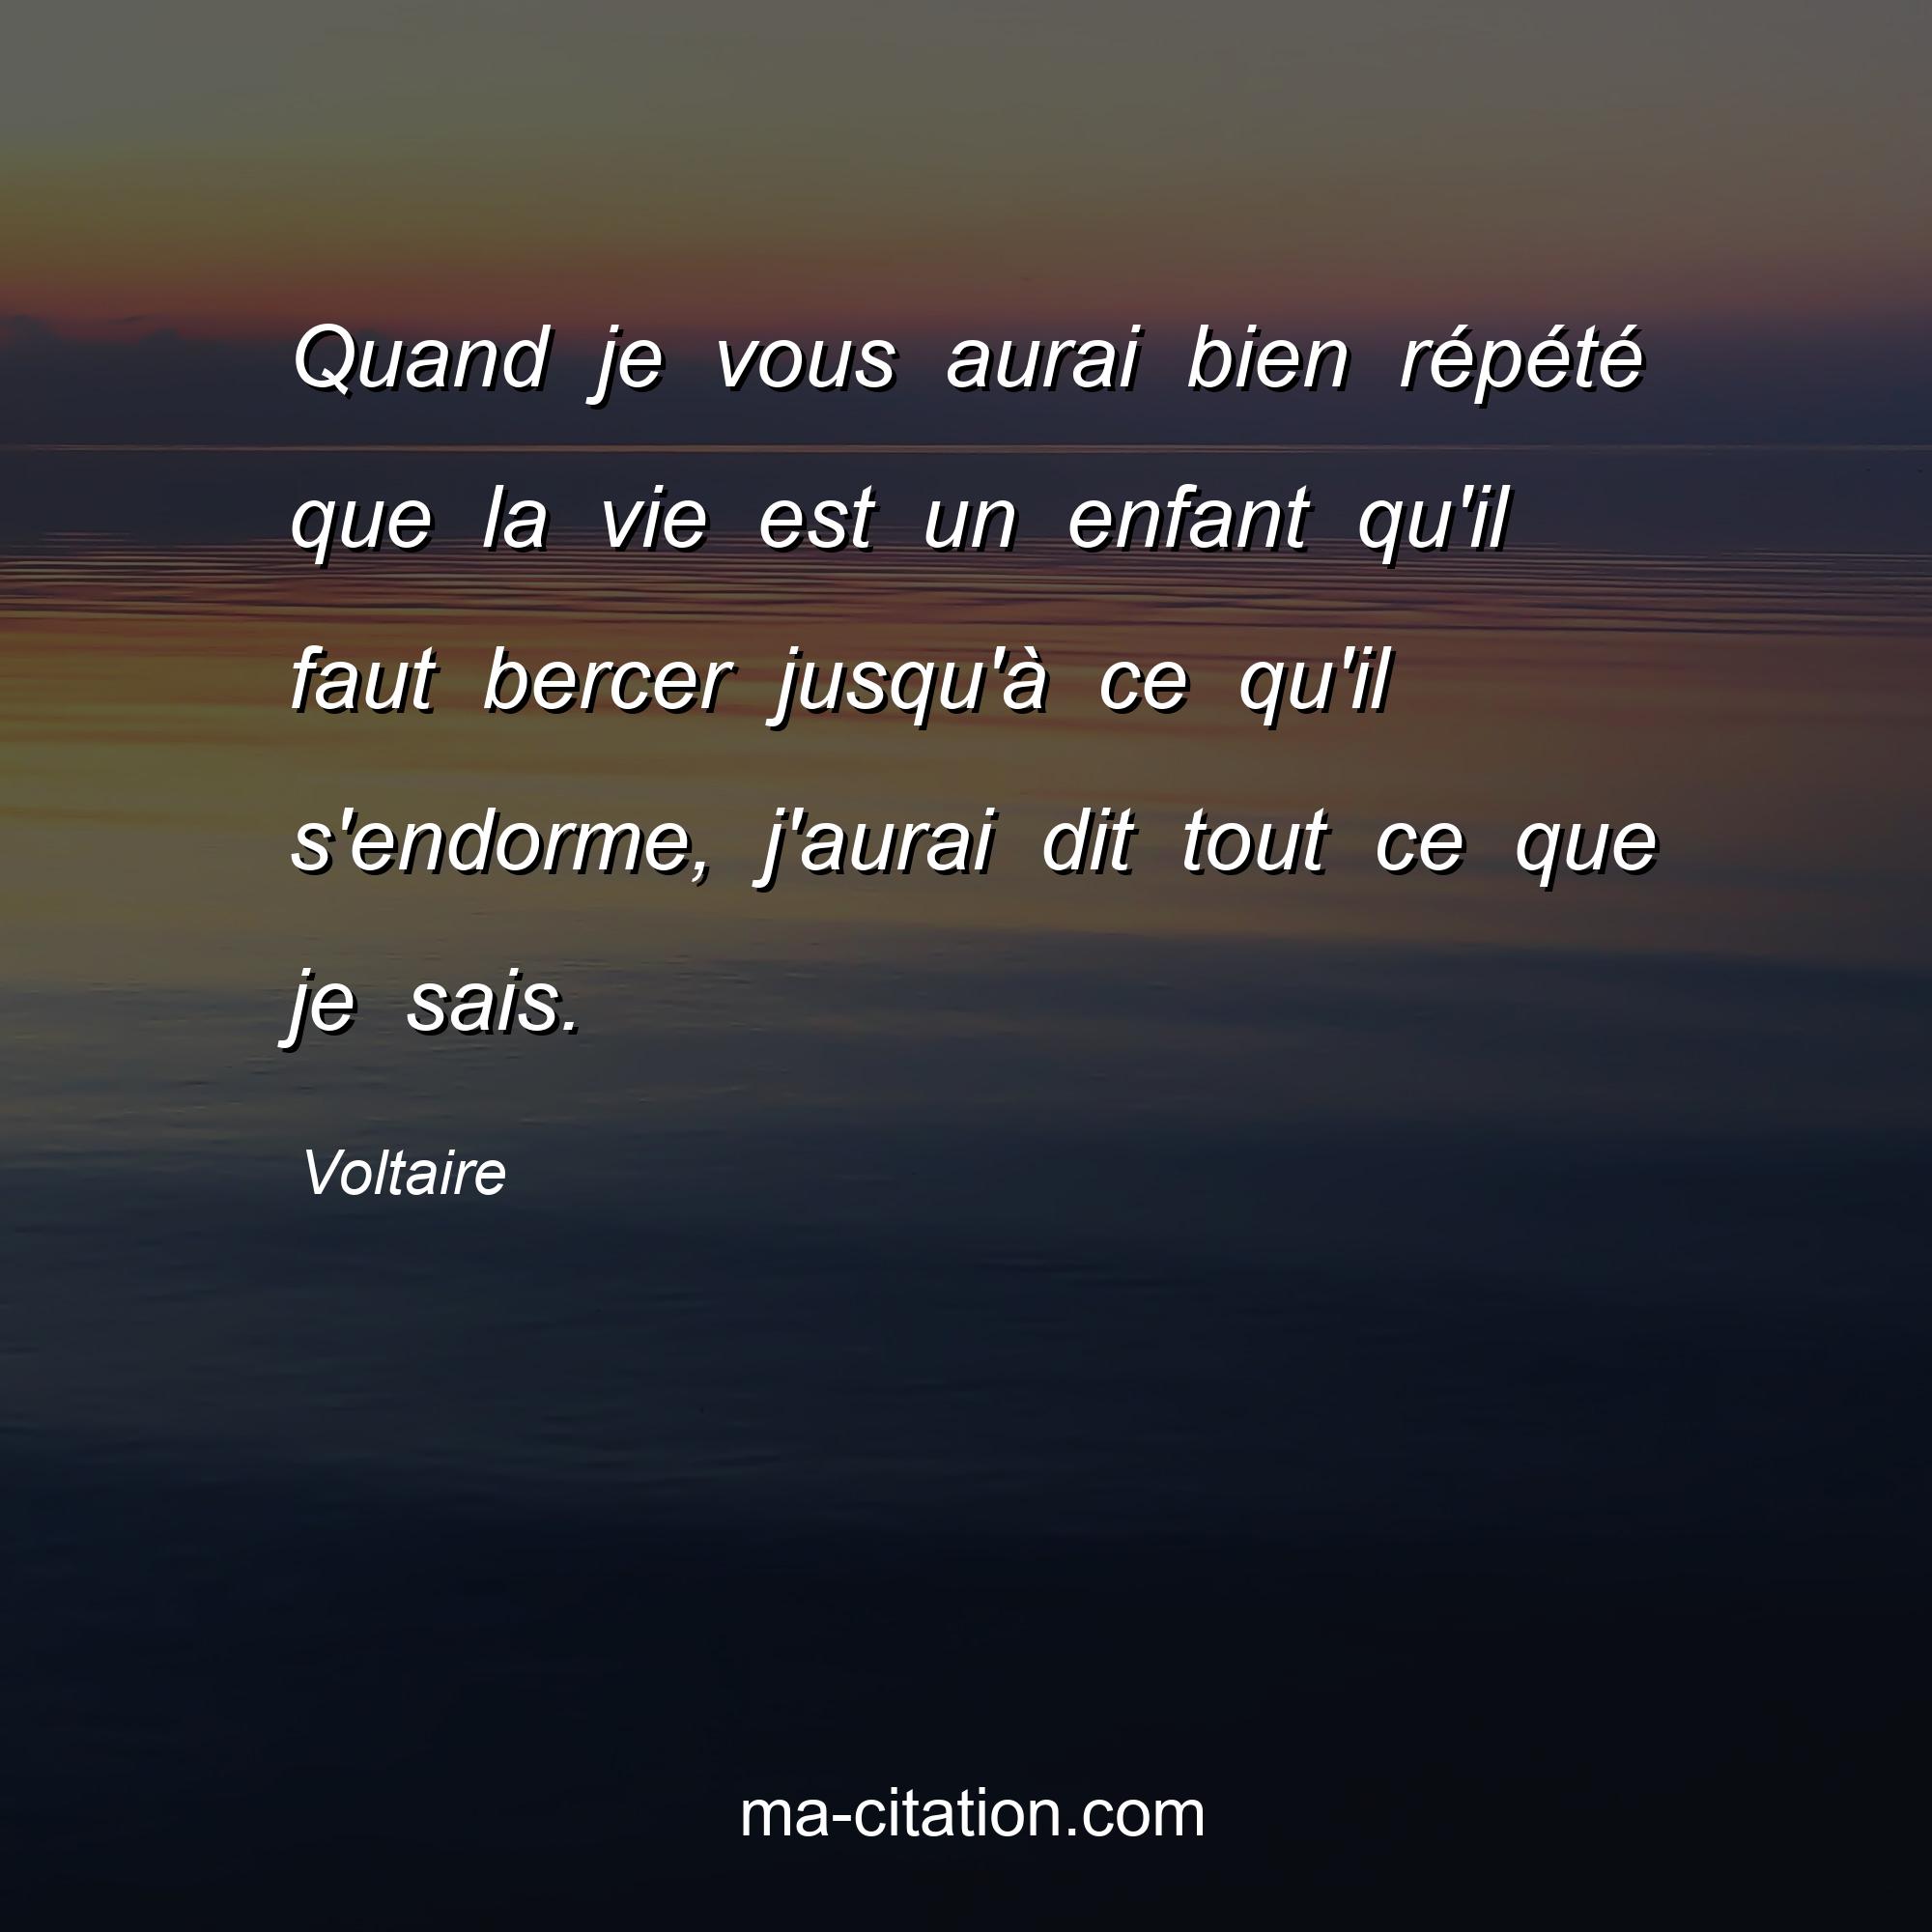 Voltaire : Quand je vous aurai bien répété que la vie est un enfant qu'il faut bercer jusqu'à ce qu'il s'endorme, j'aurai dit tout ce que je sais.